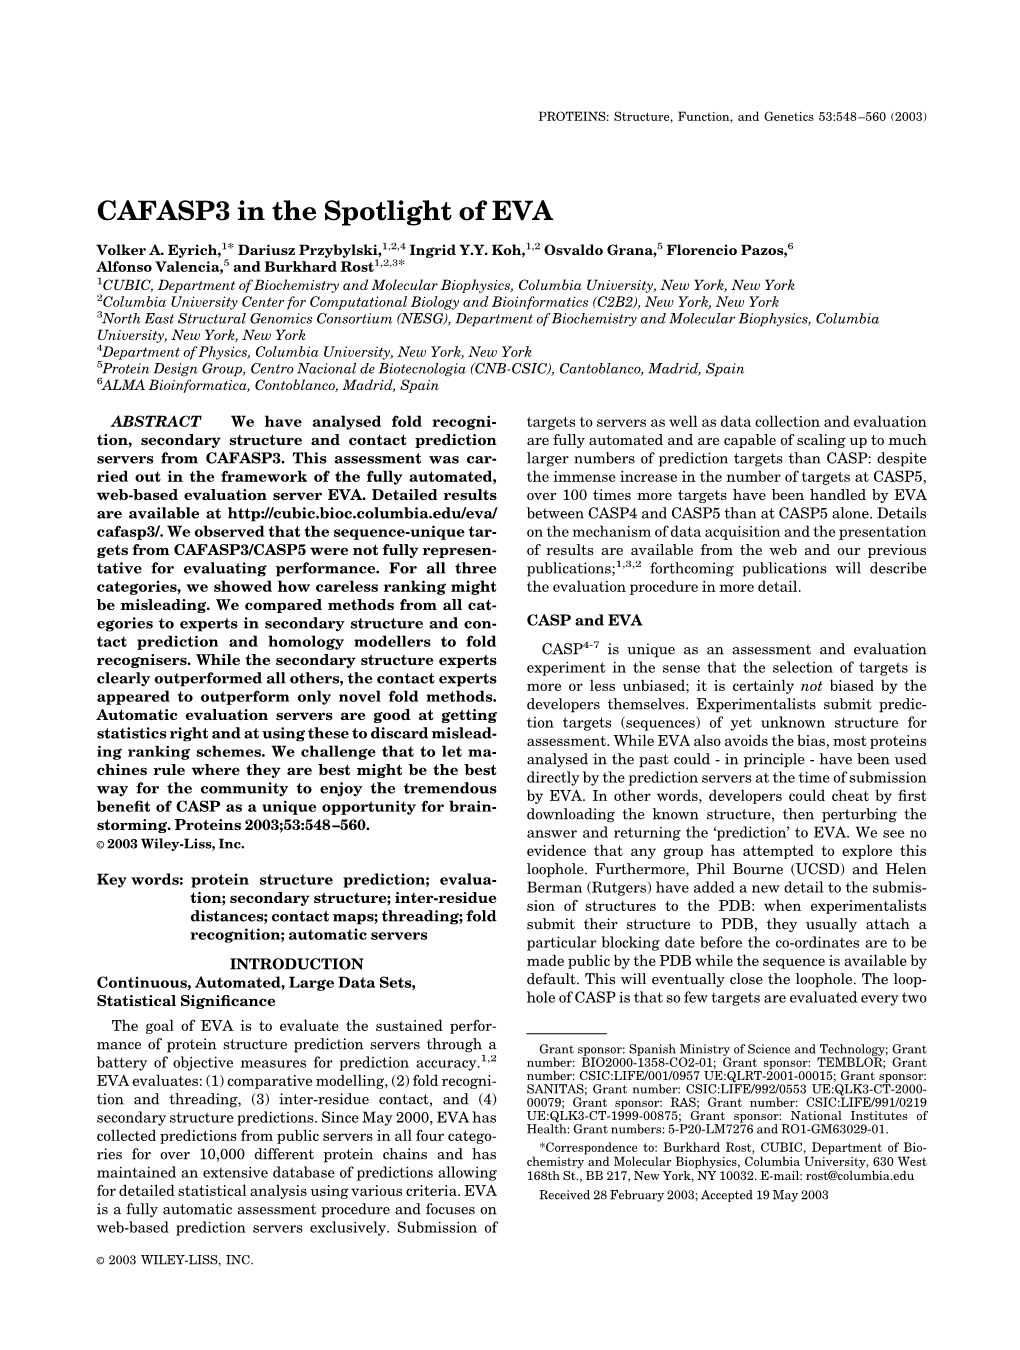 CAFASP3 in the Spotlight of EVA